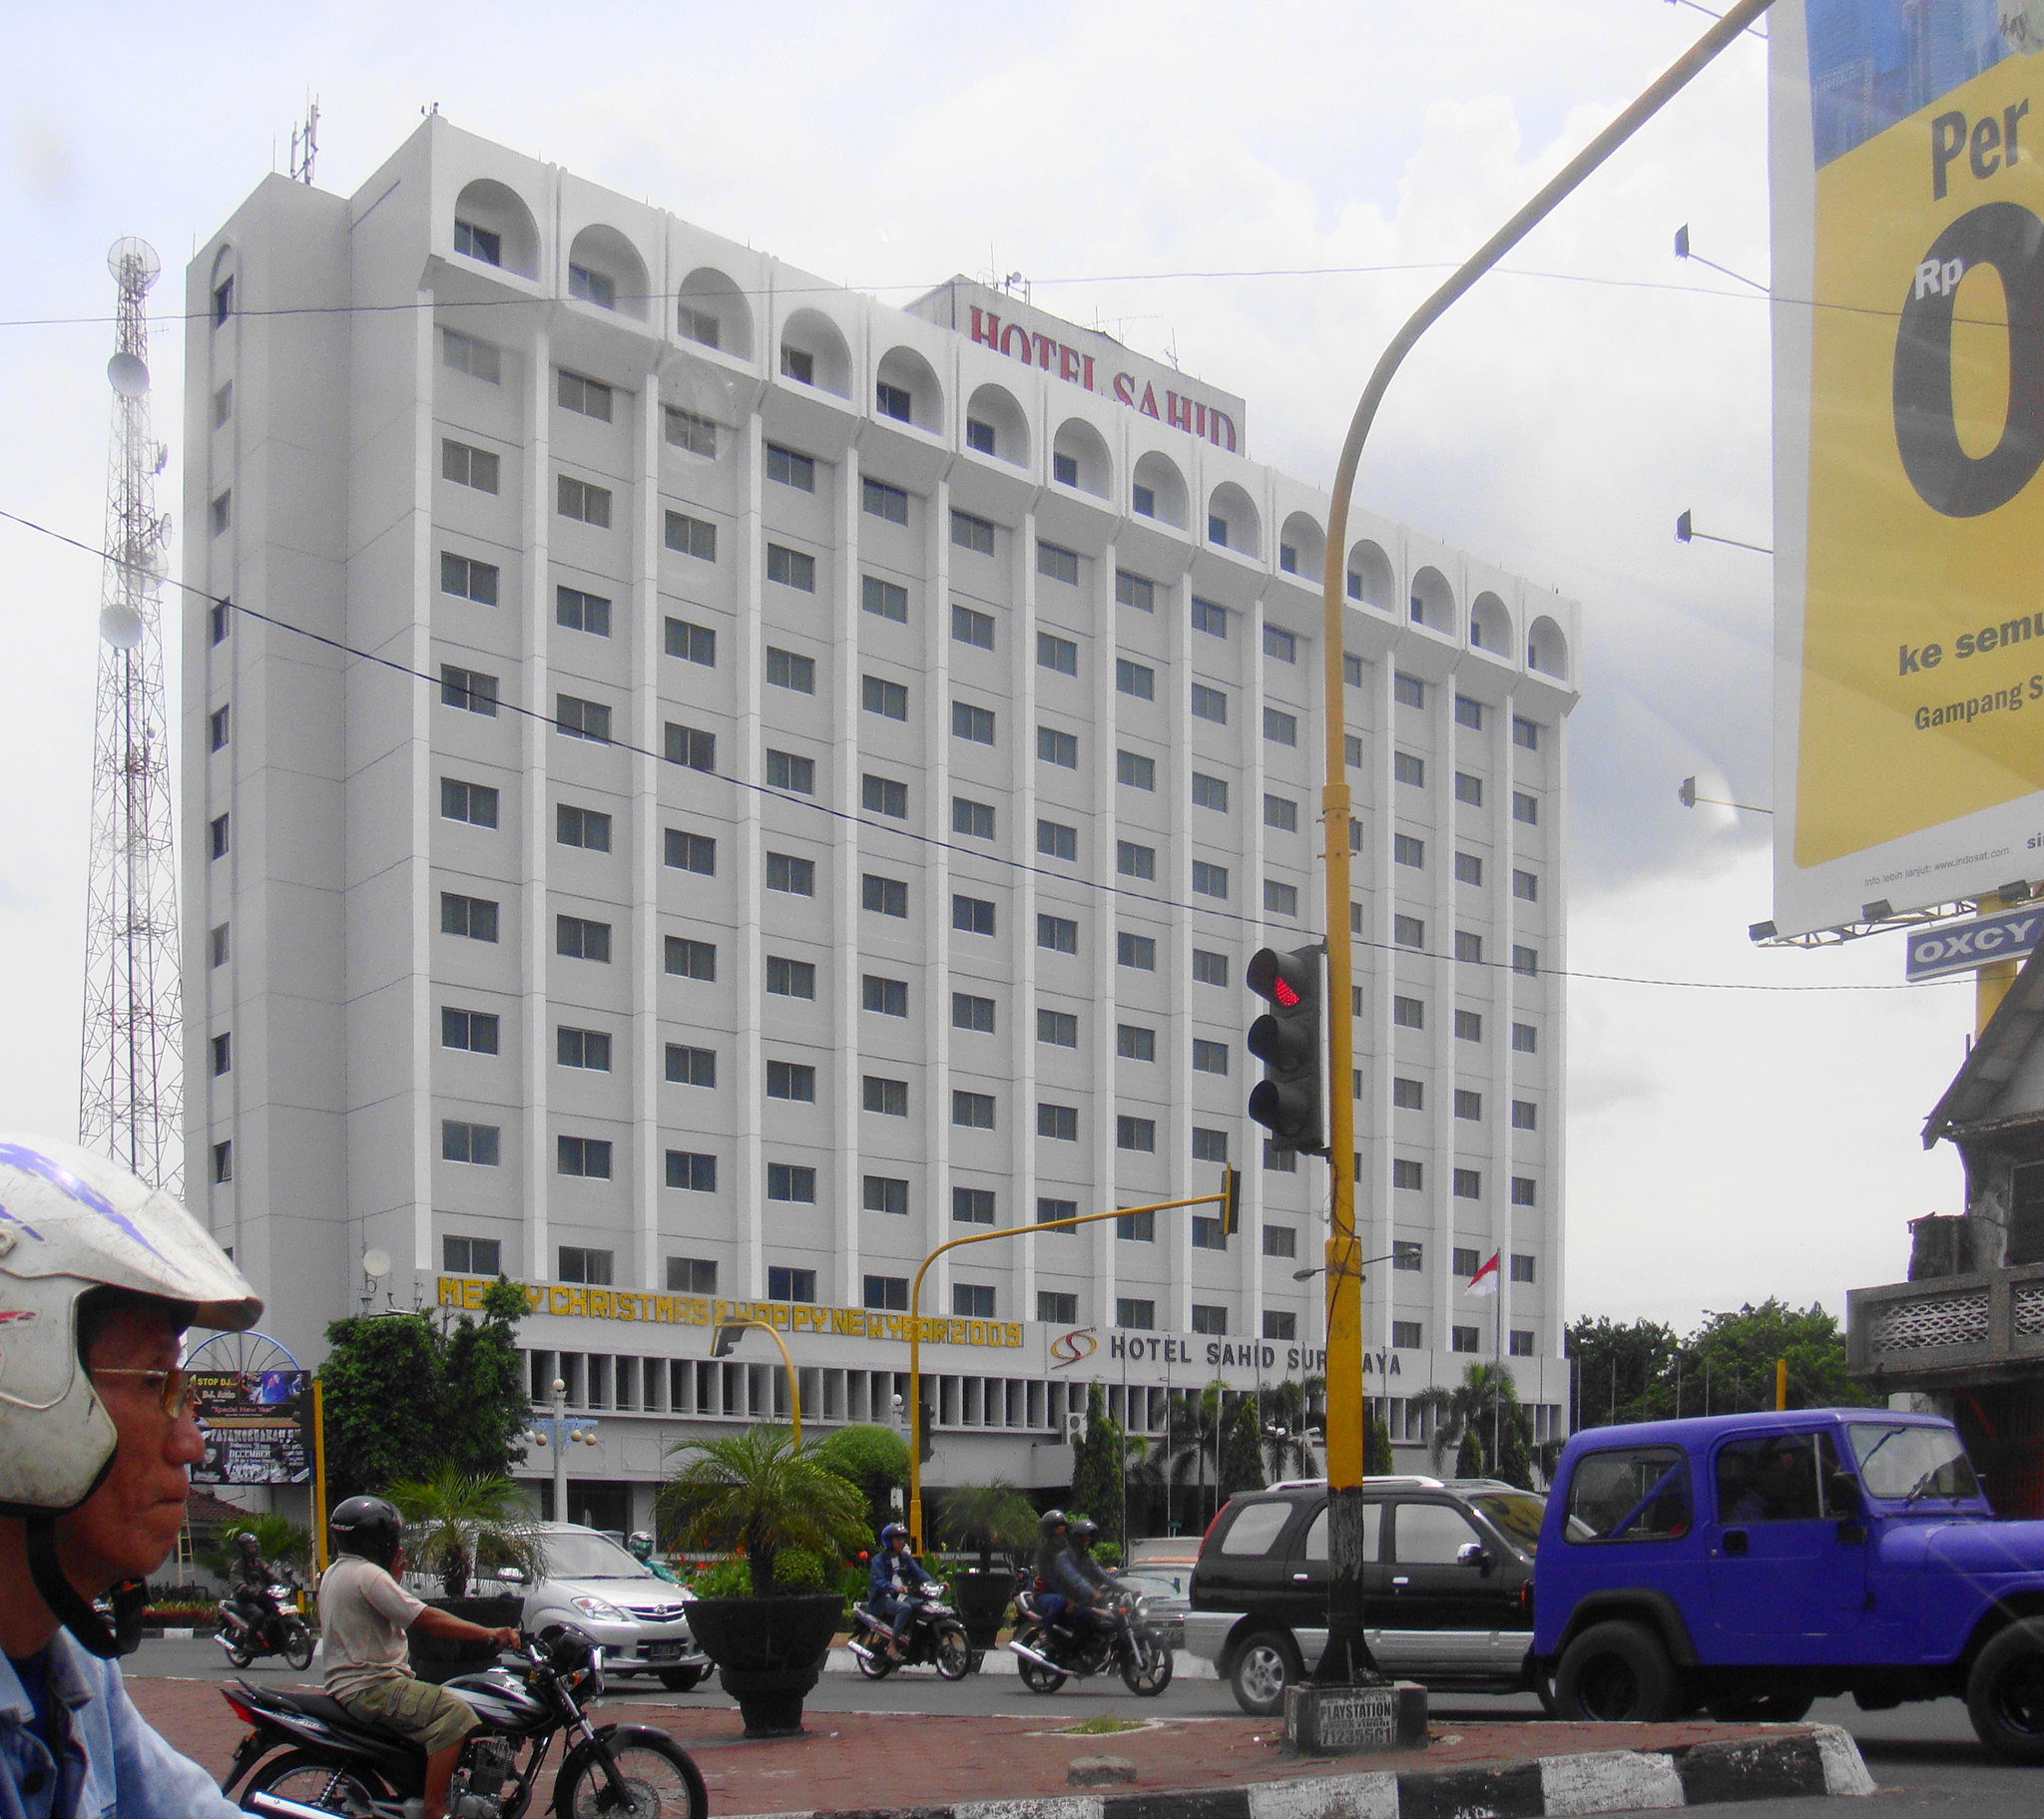 Hotel Sahid Surabaya